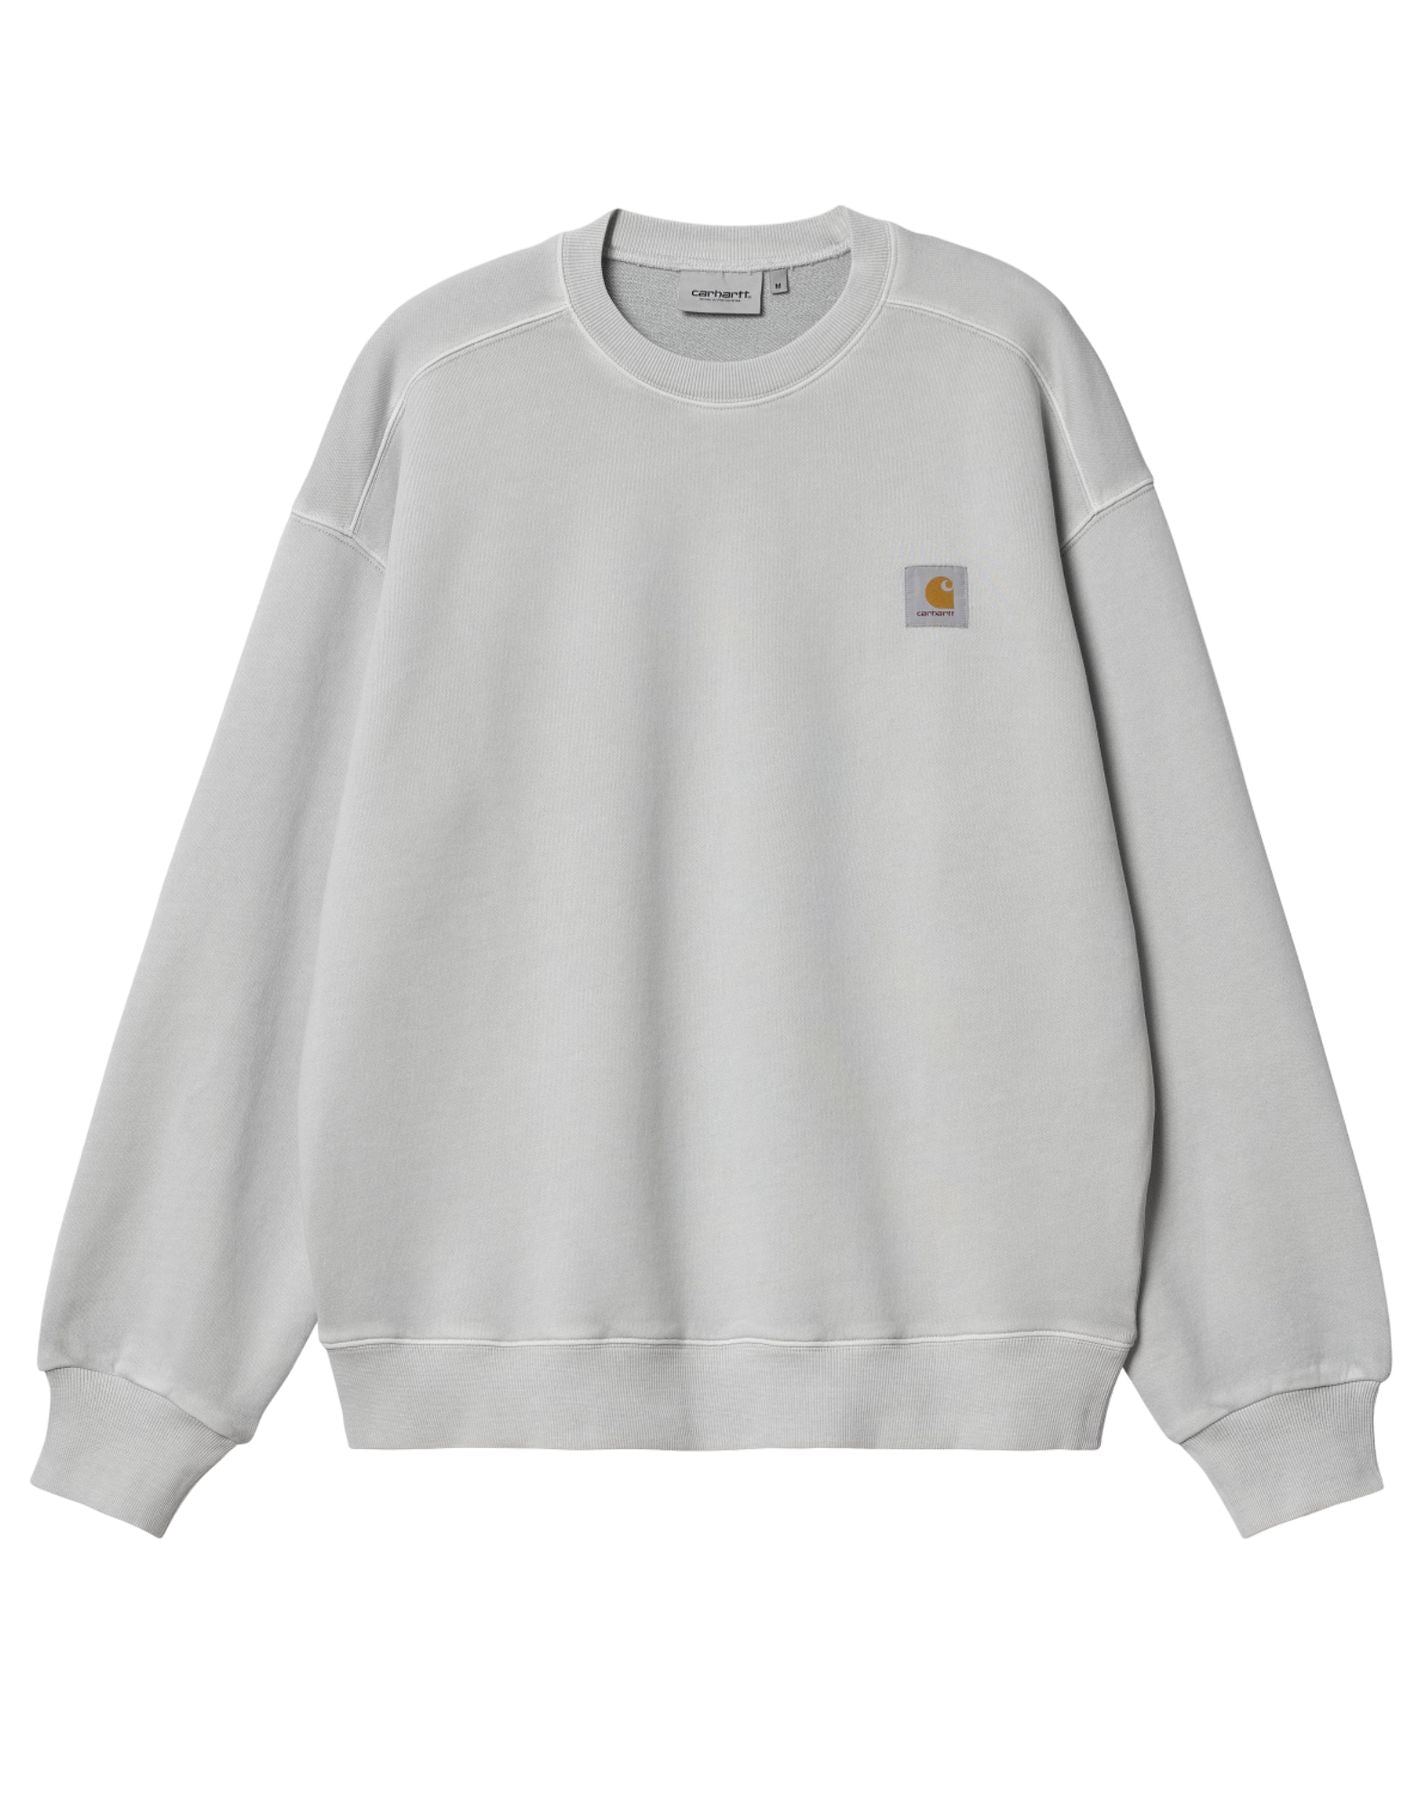 Sweatshirt for man I029957 1YE.GD grey CARHARTT WIP